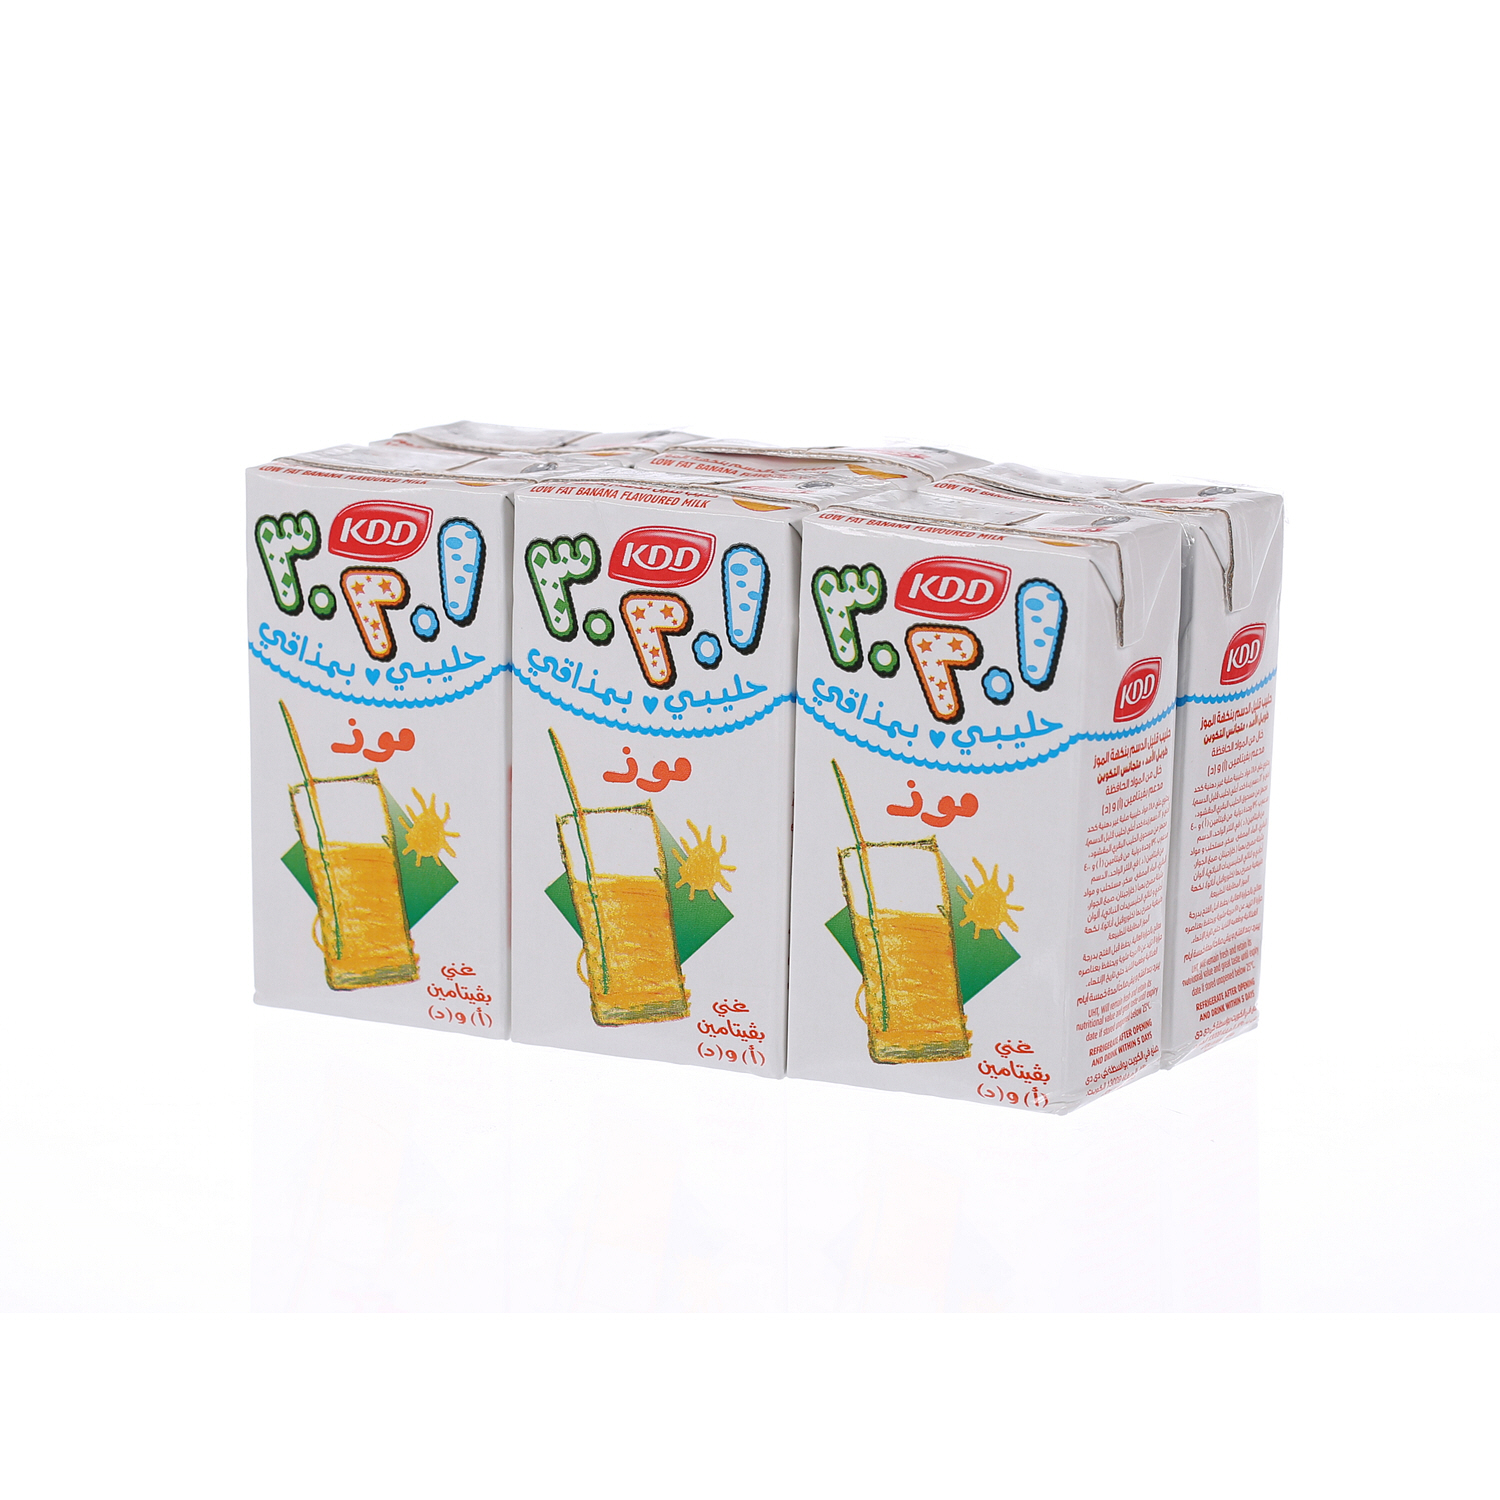 Kdd 123 Banana Milk 125 ml × 6 Pack